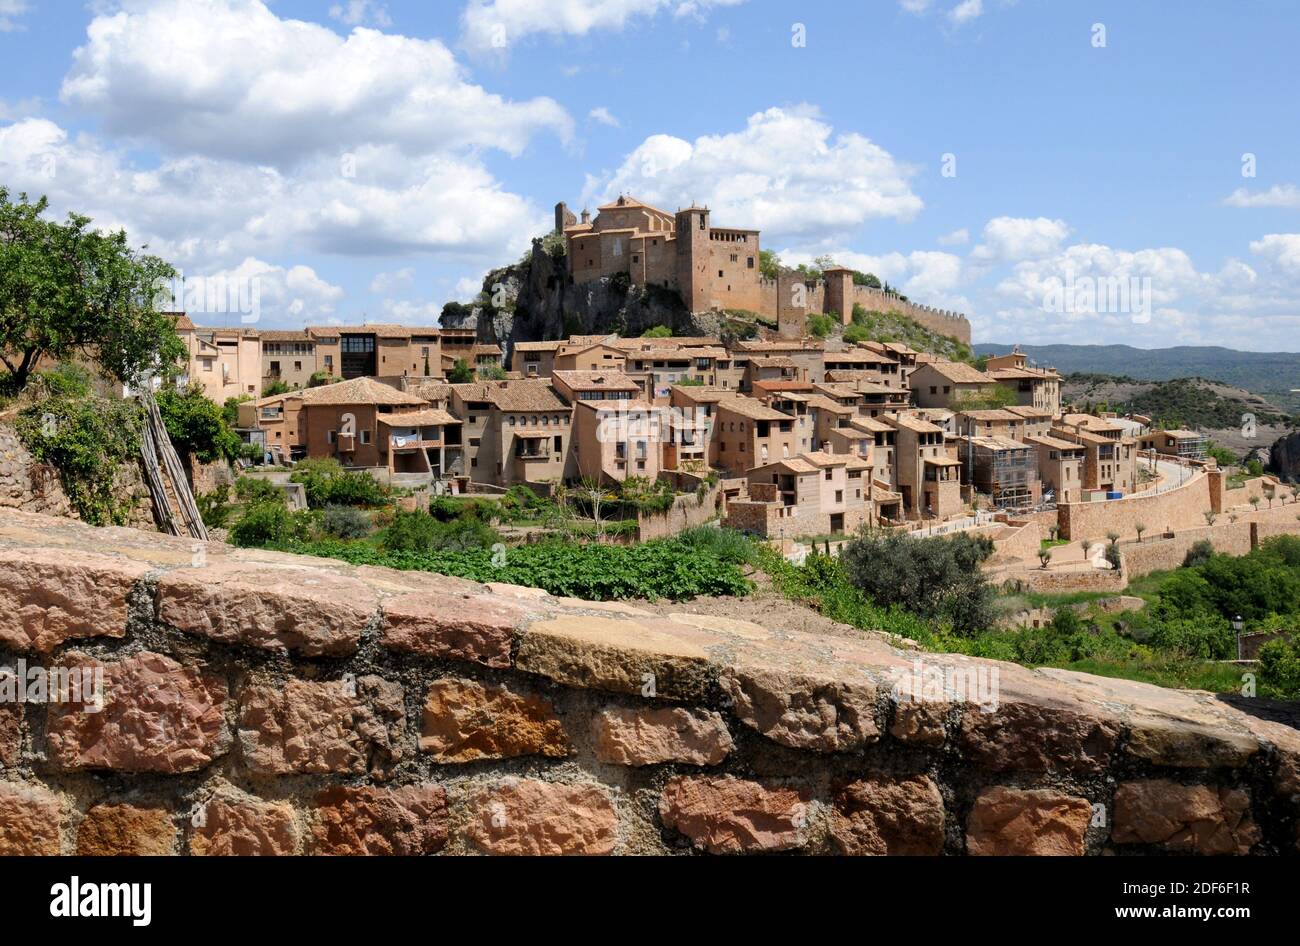 Alquezar. Sobrarbe, Provinz Huesca, Aragon, Spanien. Stockfoto